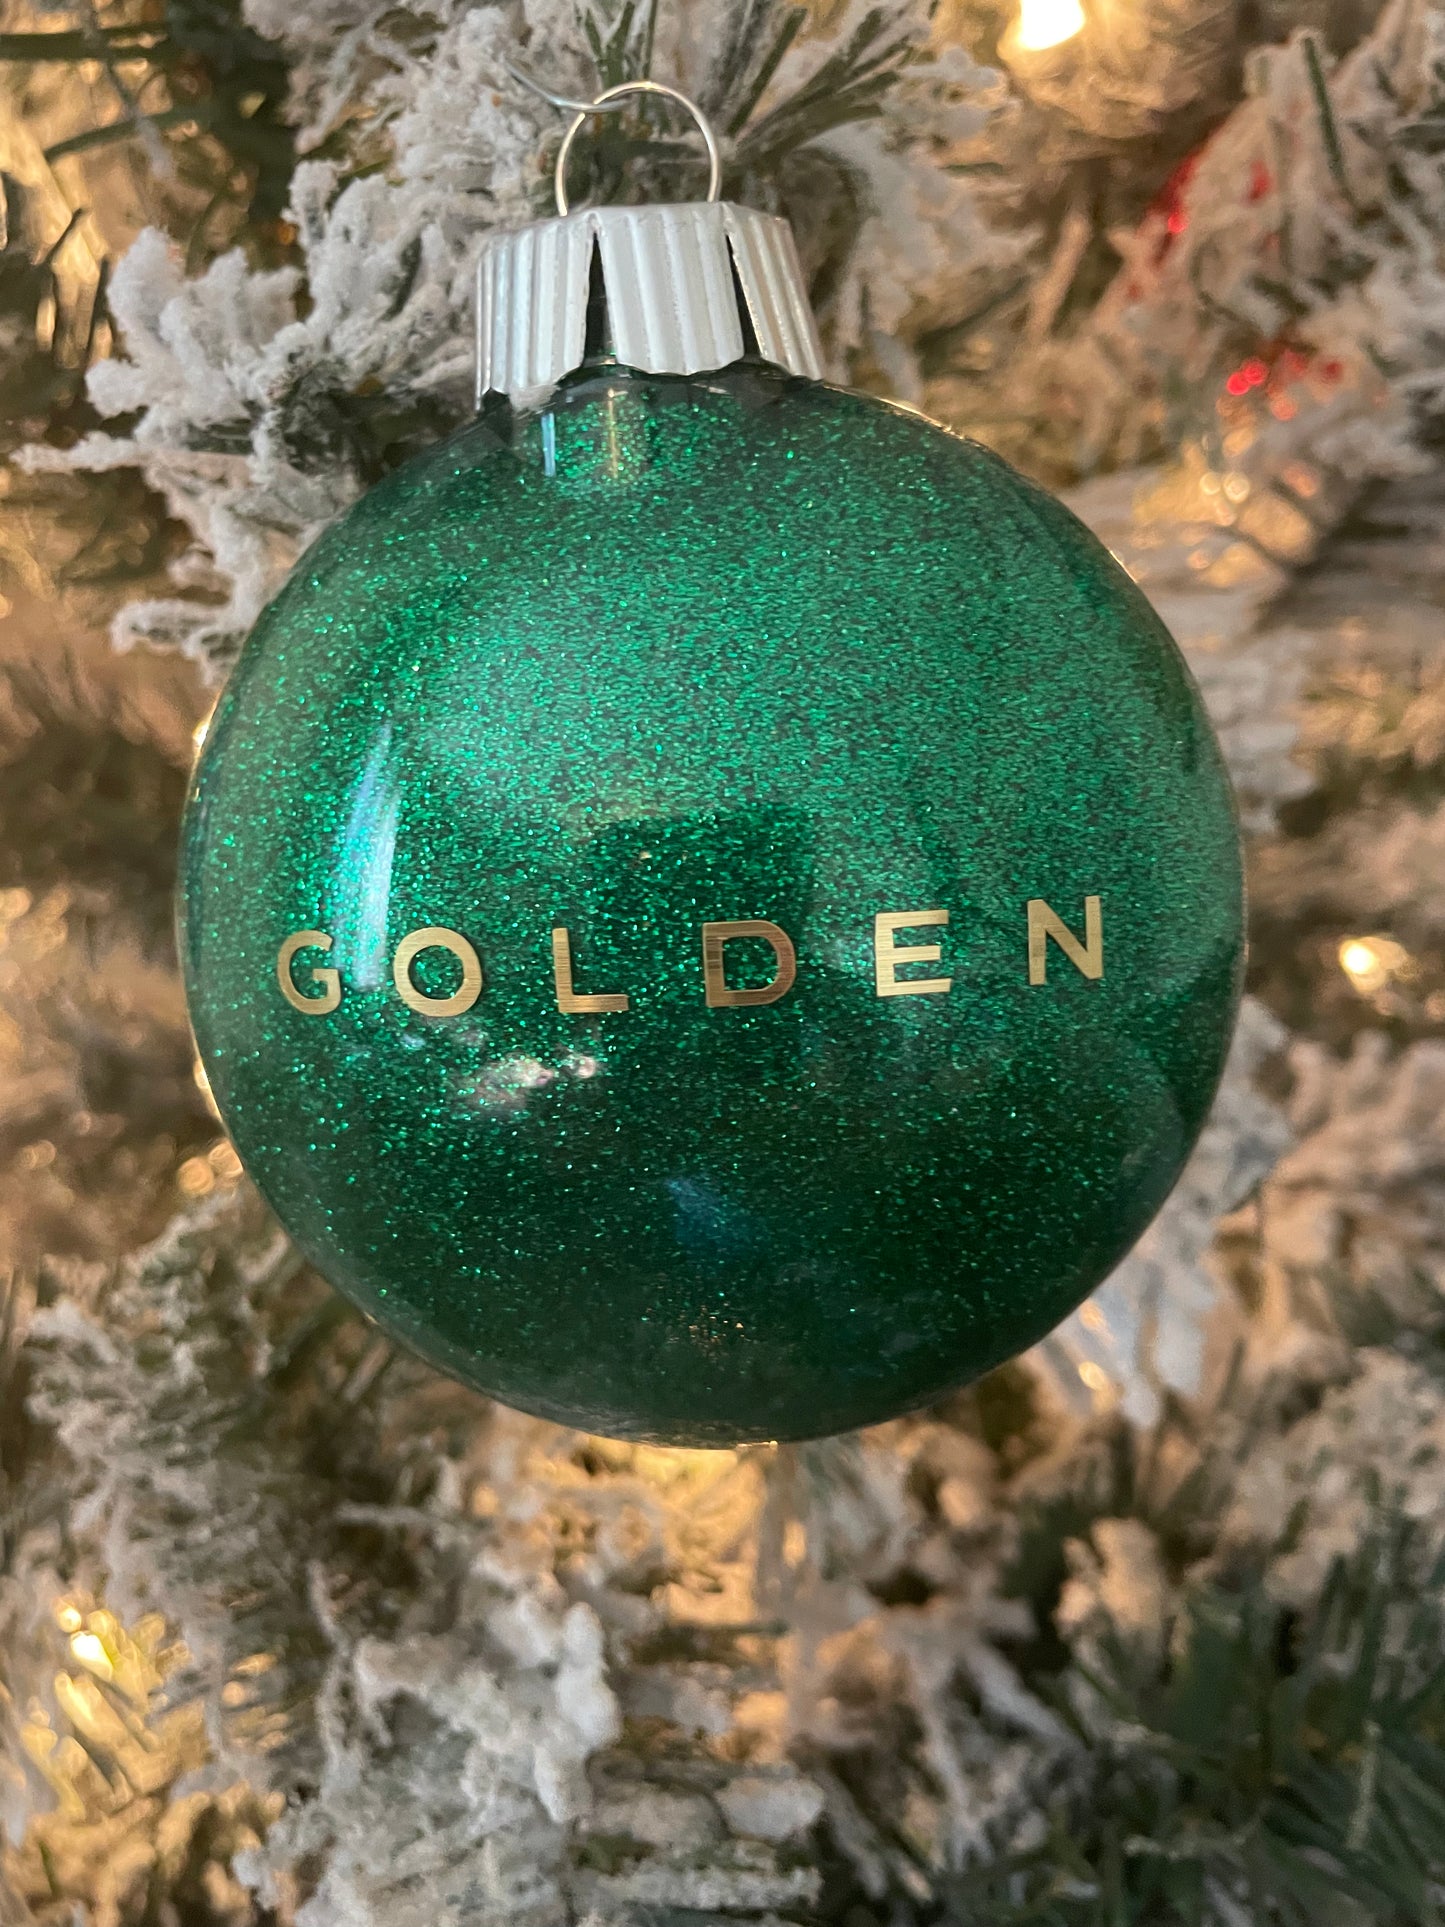 Golden inspired Ornament